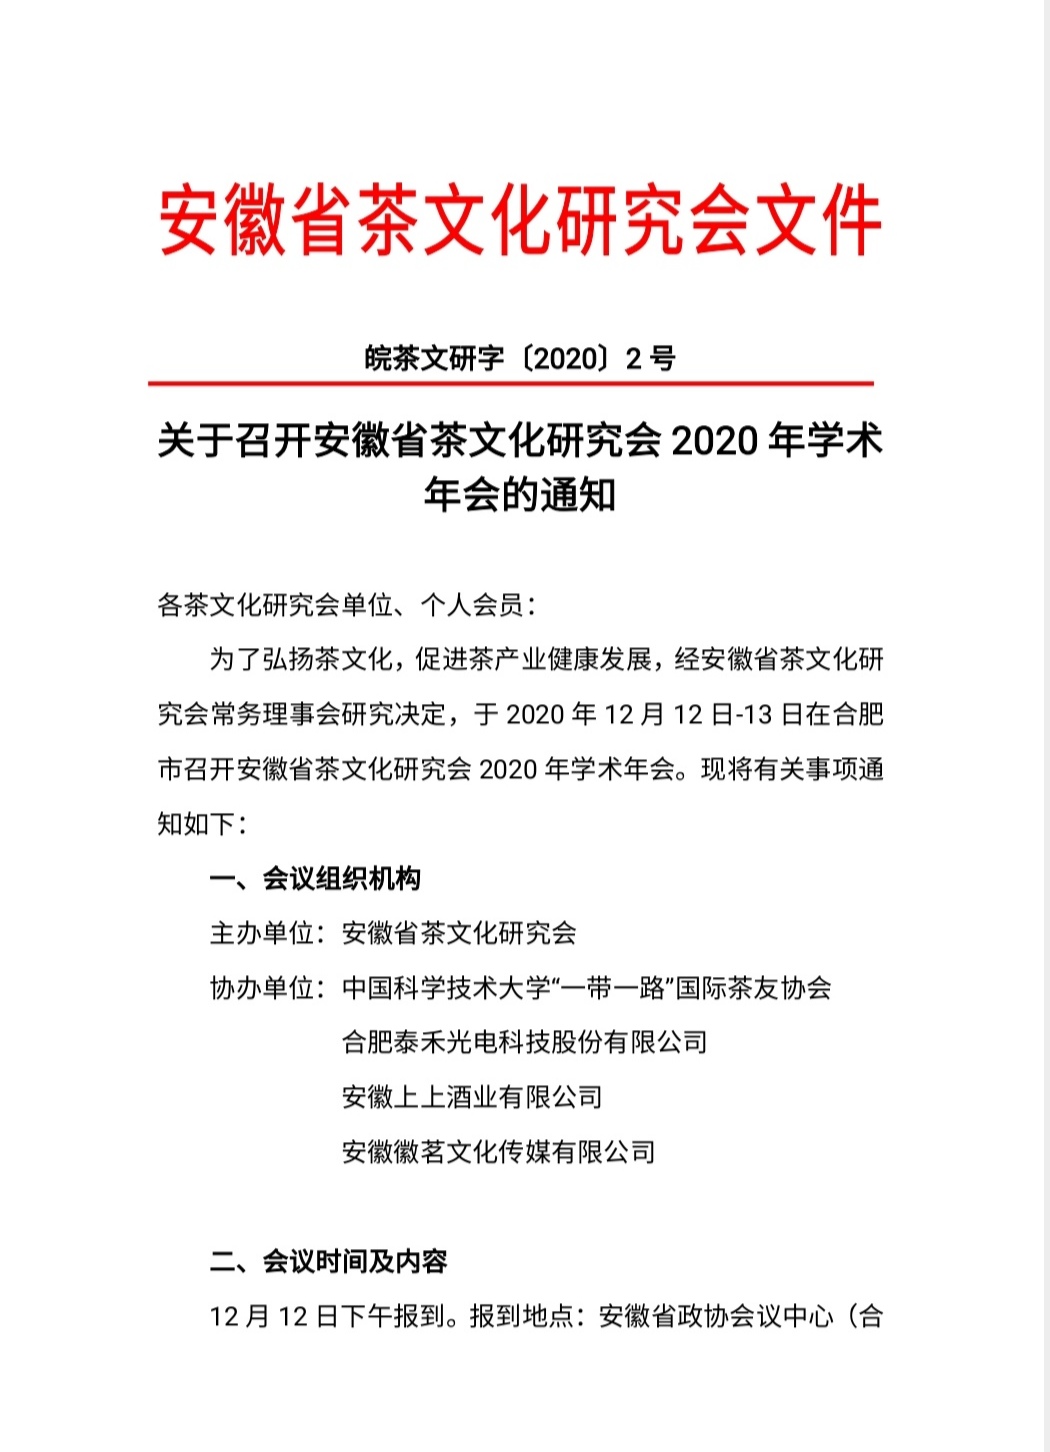 关于召开安徽省茶文化研究会2020年学术年会的通知